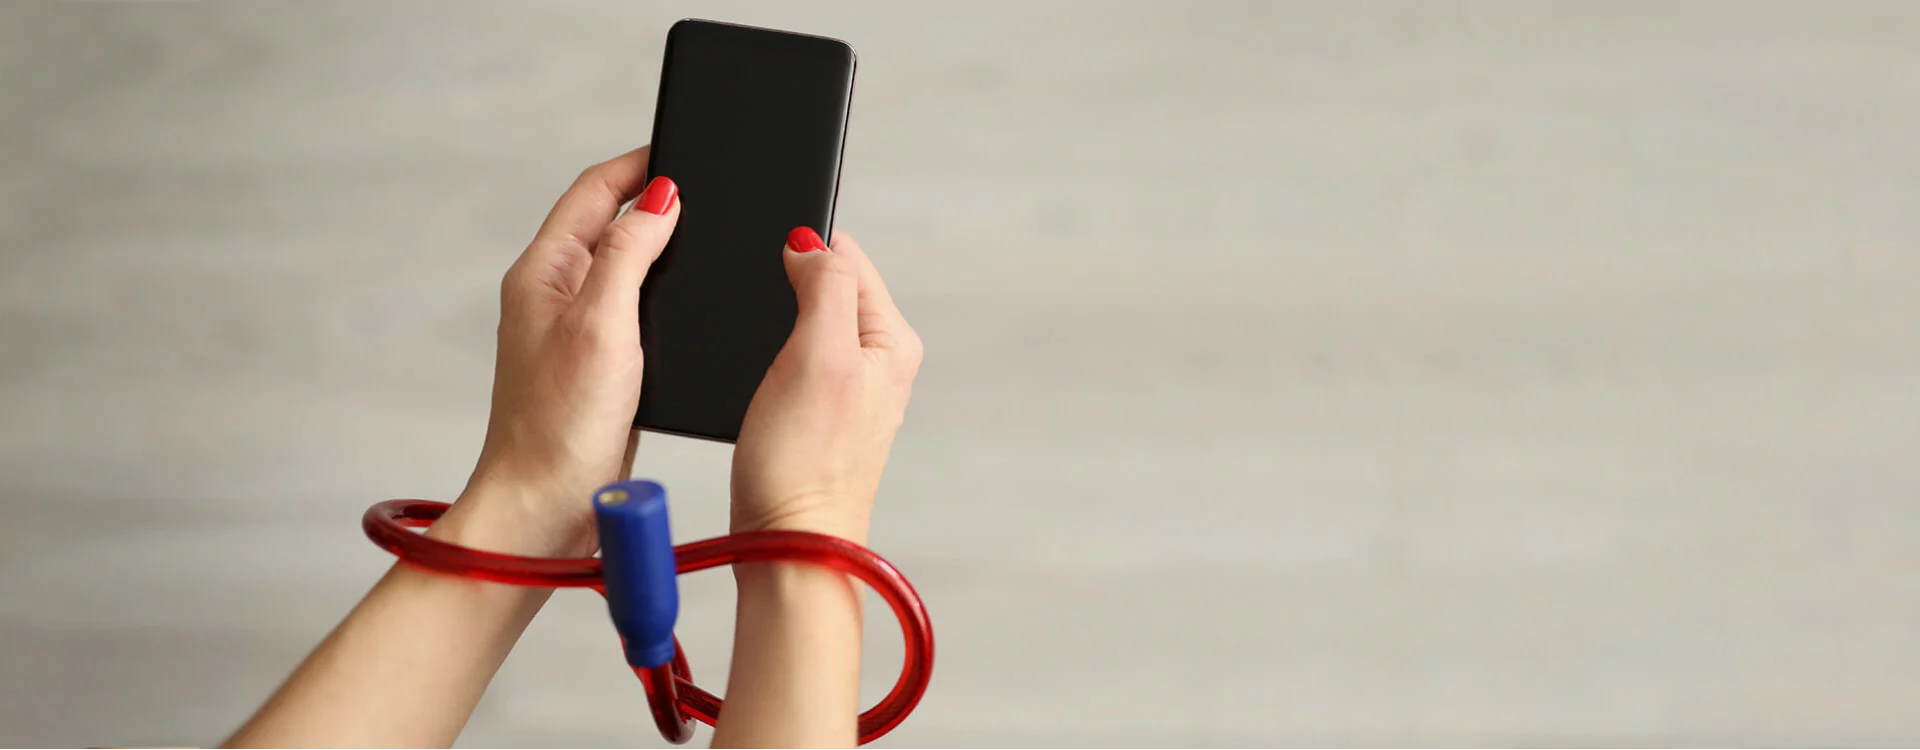 Nomophobie : comment gérer son addiction au téléphone portable ? : Femme  Actuelle Le MAG